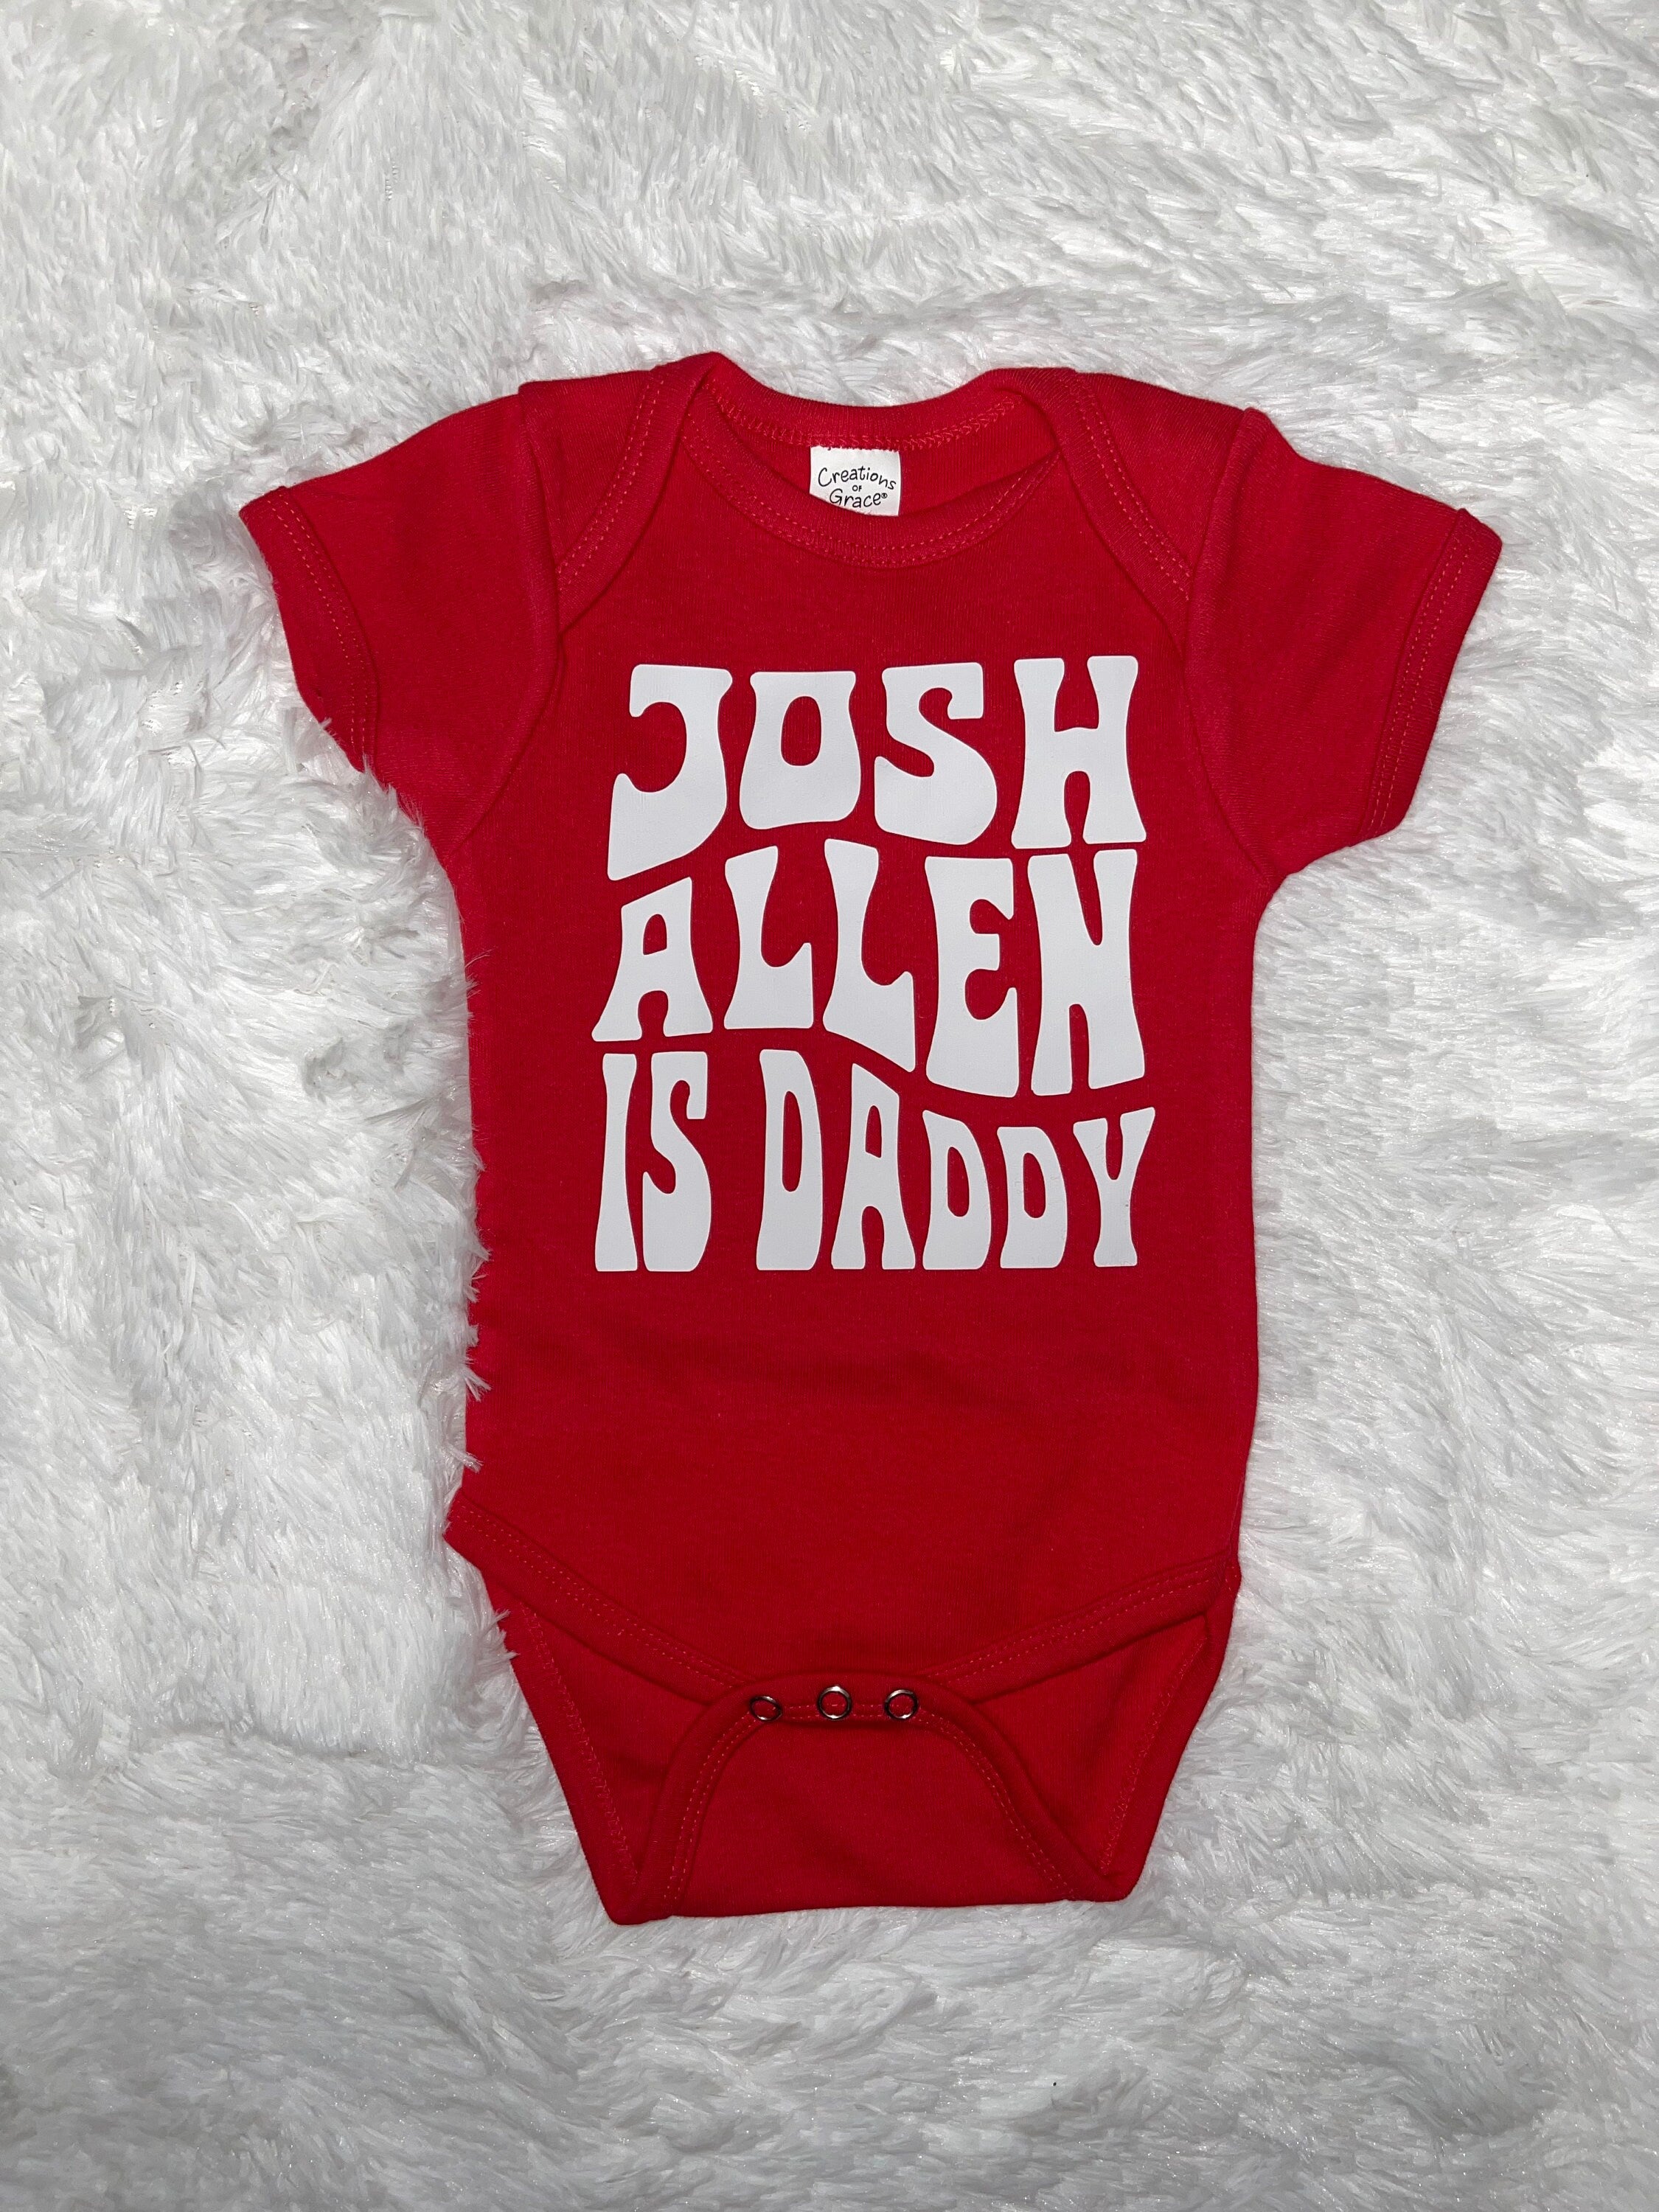 Josh Allen is Daddy Onesie – Sunshinetshirtco